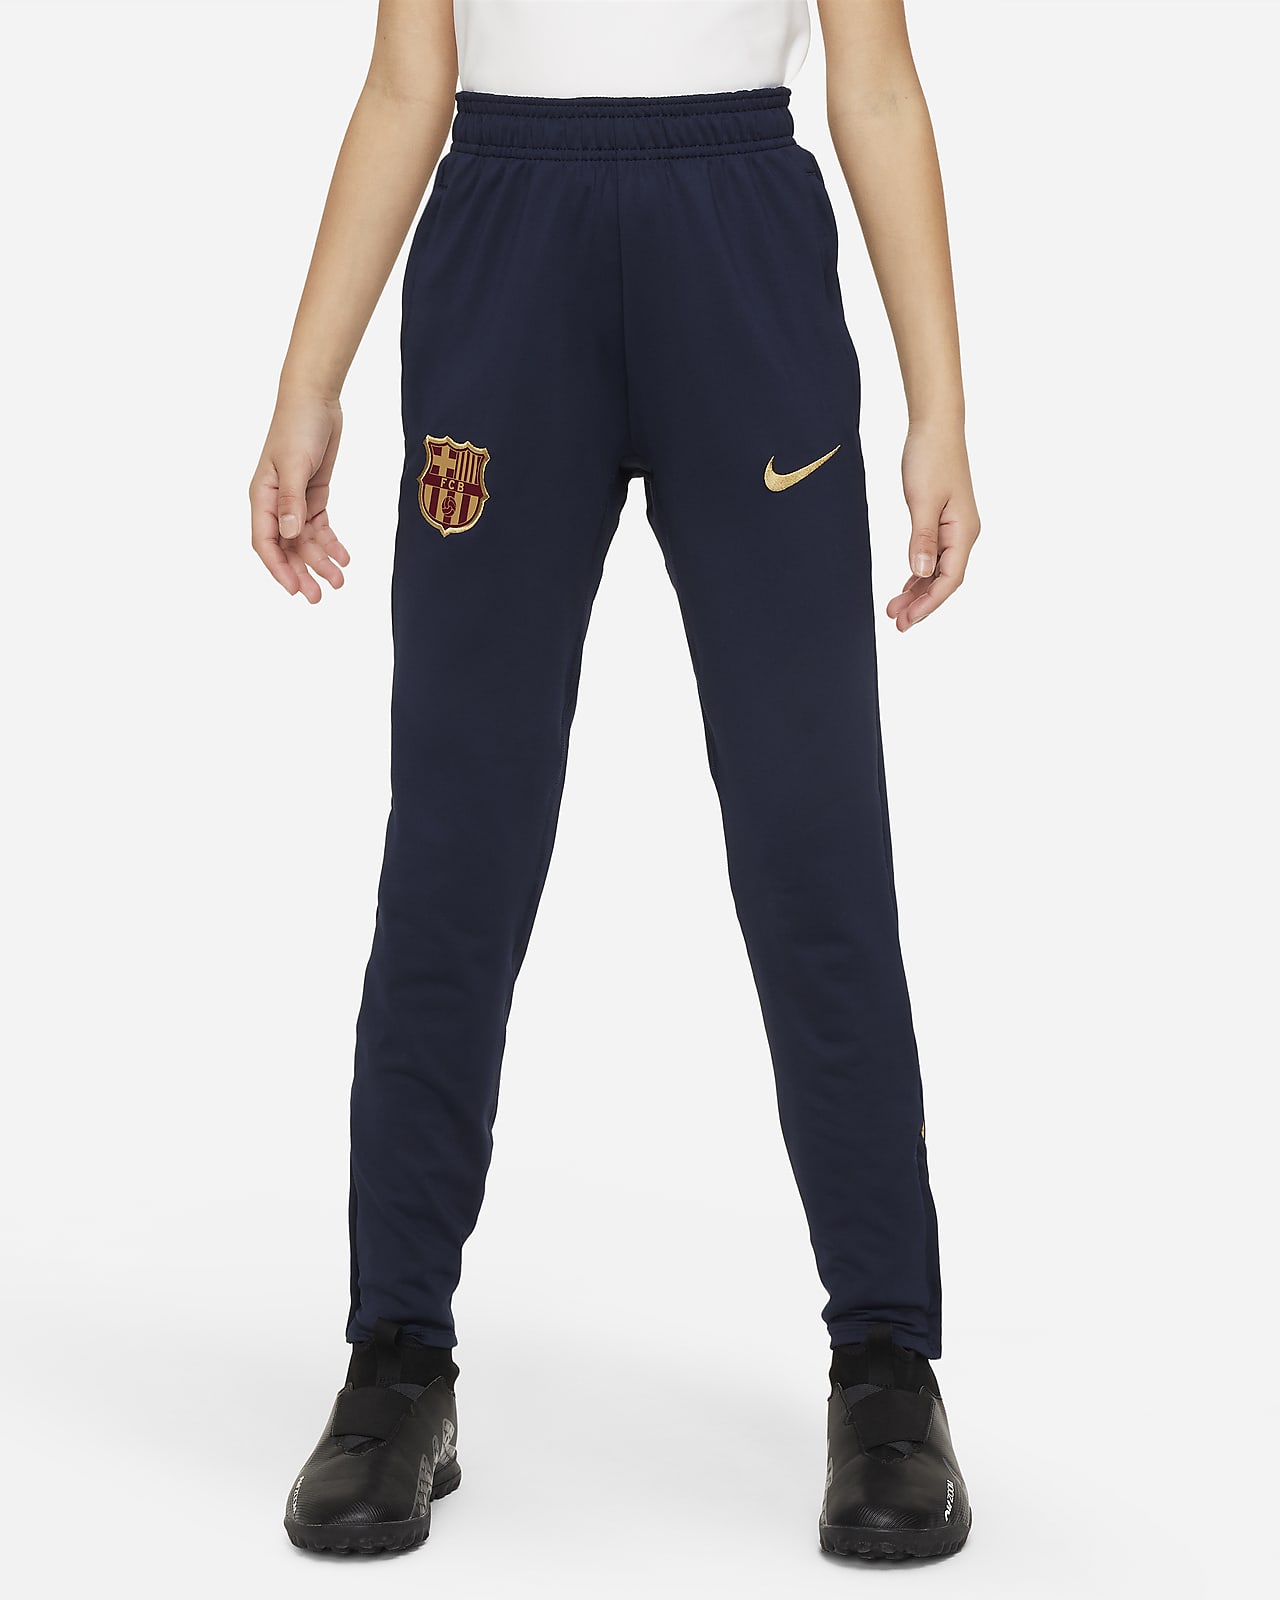 Ποδοσφαιρικό παντελόνι Nike Dri-FIT Μπαρτσελόνα Strike για μεγάλα παιδιά